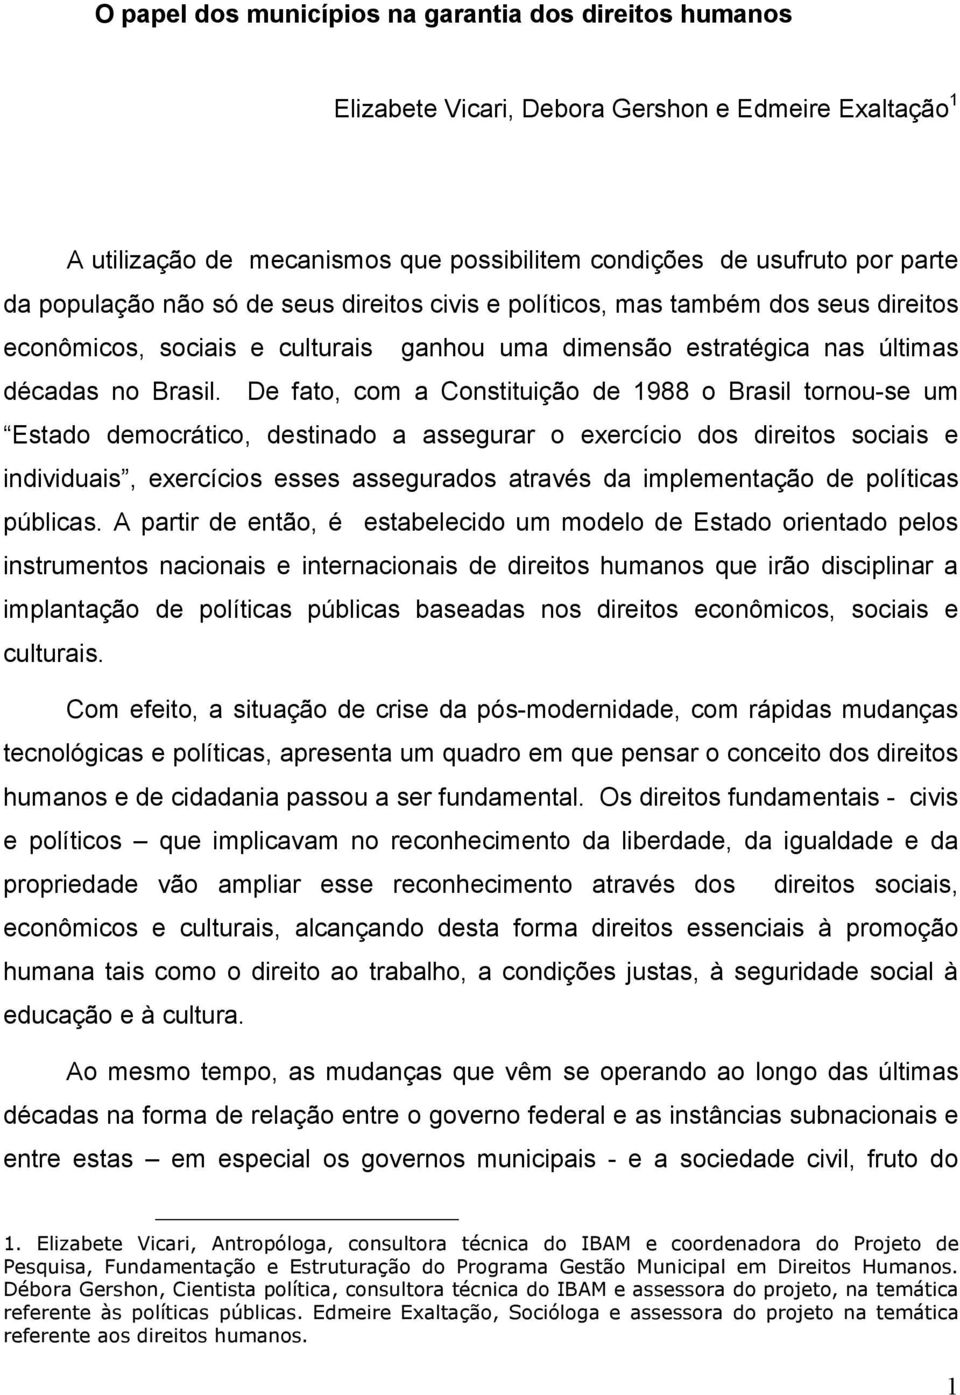 De fato, com a Constituição de 1988 o Brasil tornou-se um Estado democrático, destinado a assegurar o exercício dos direitos sociais e individuais, exercícios esses assegurados através da